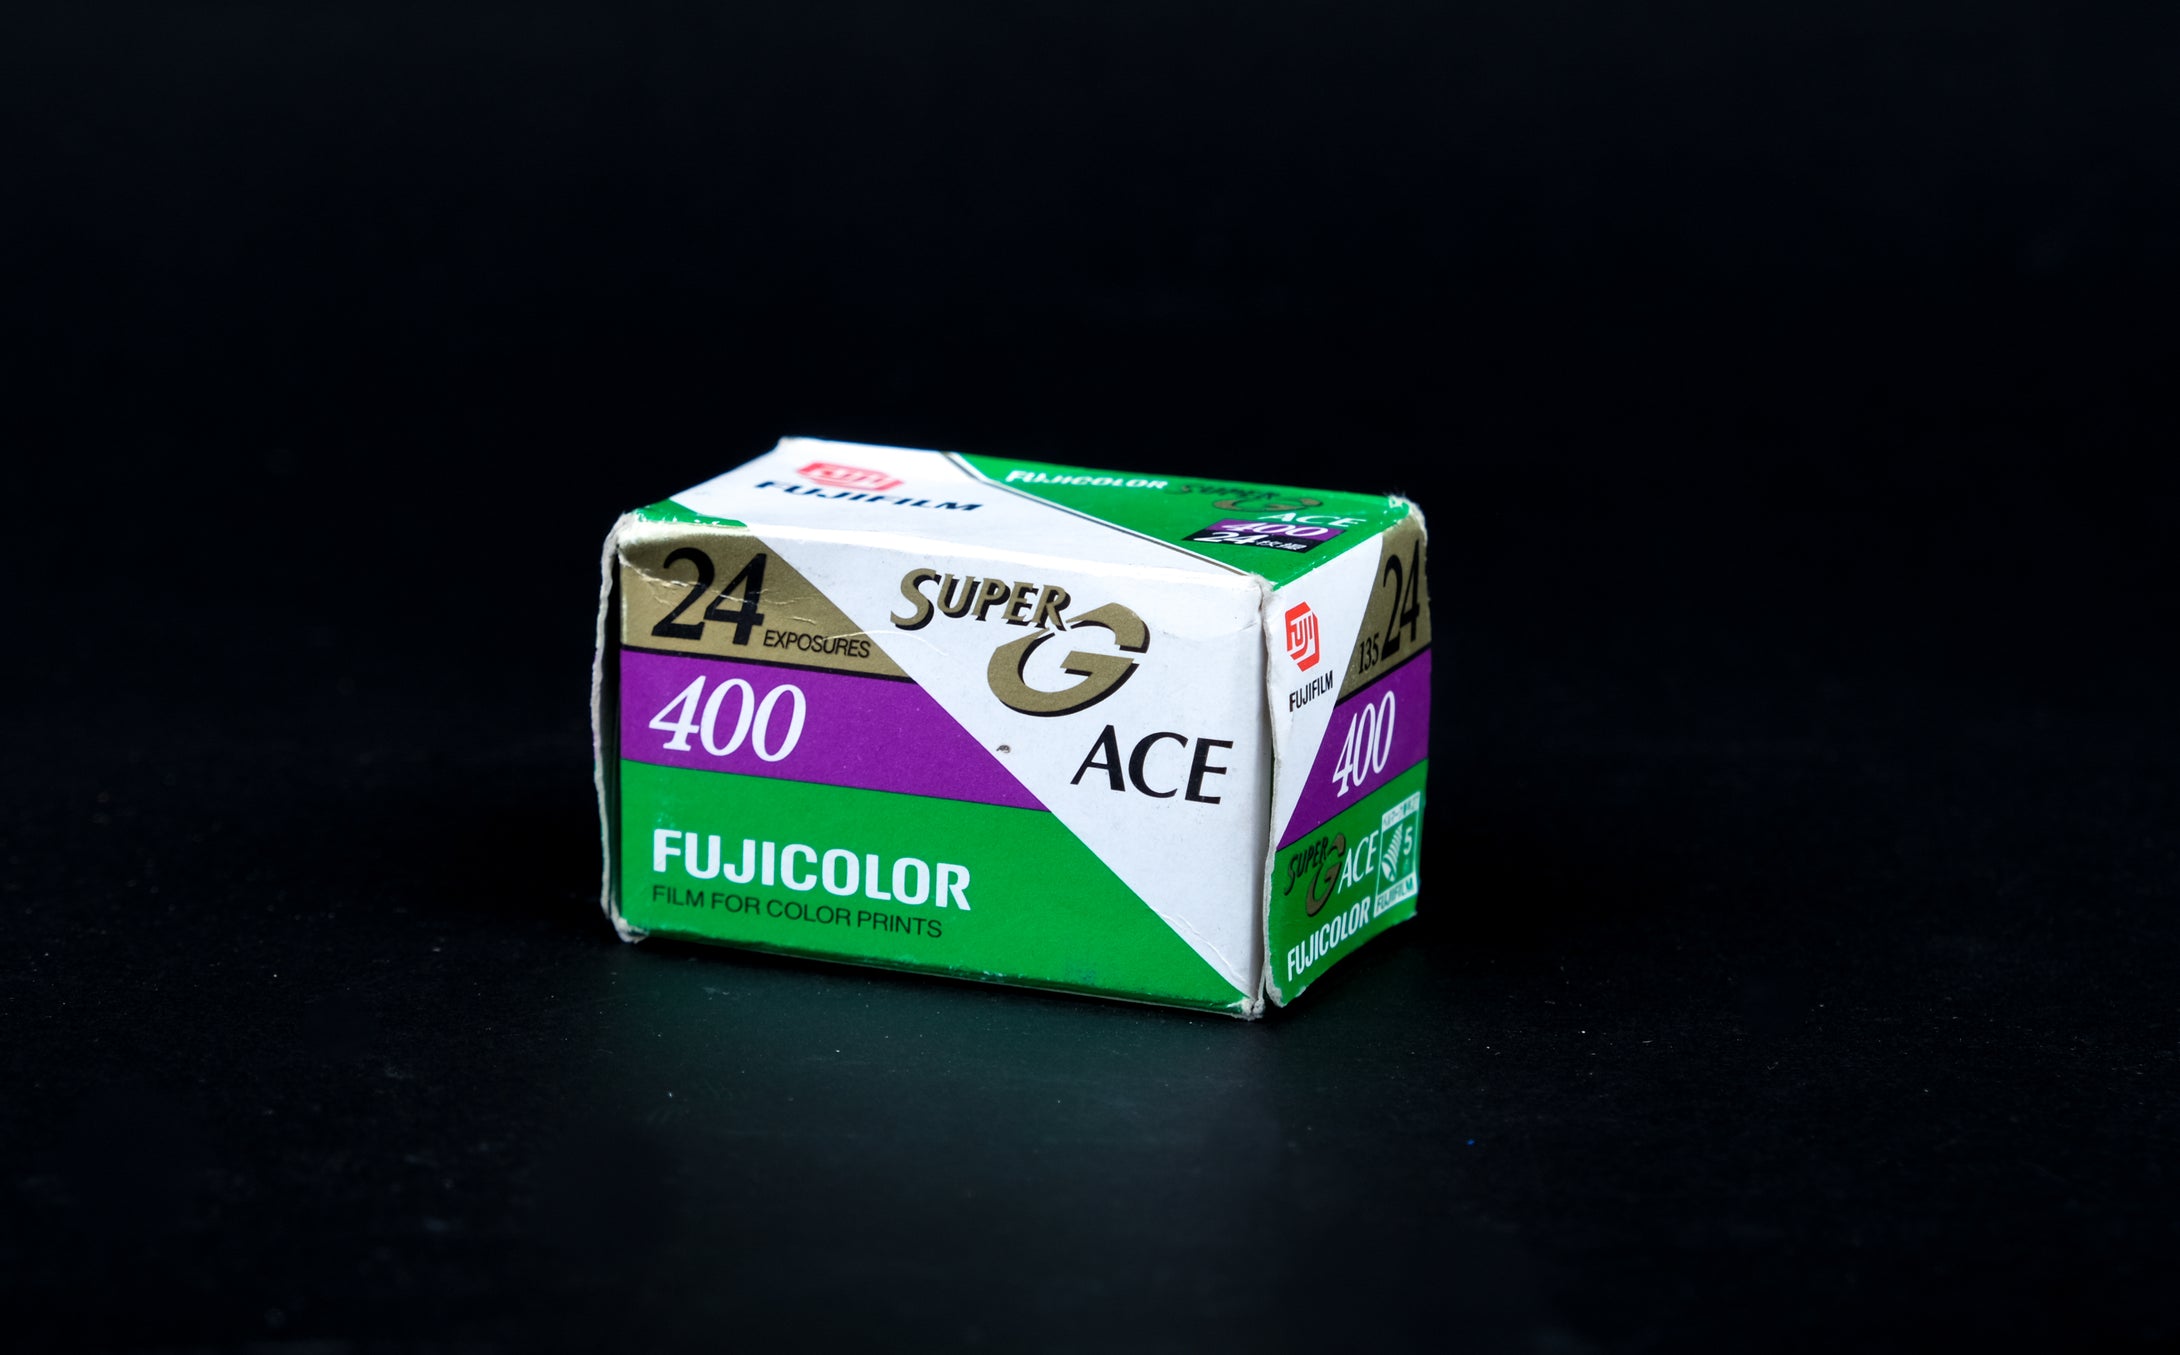 Fujifilm SuperG Ace 400 35mm Expired Film